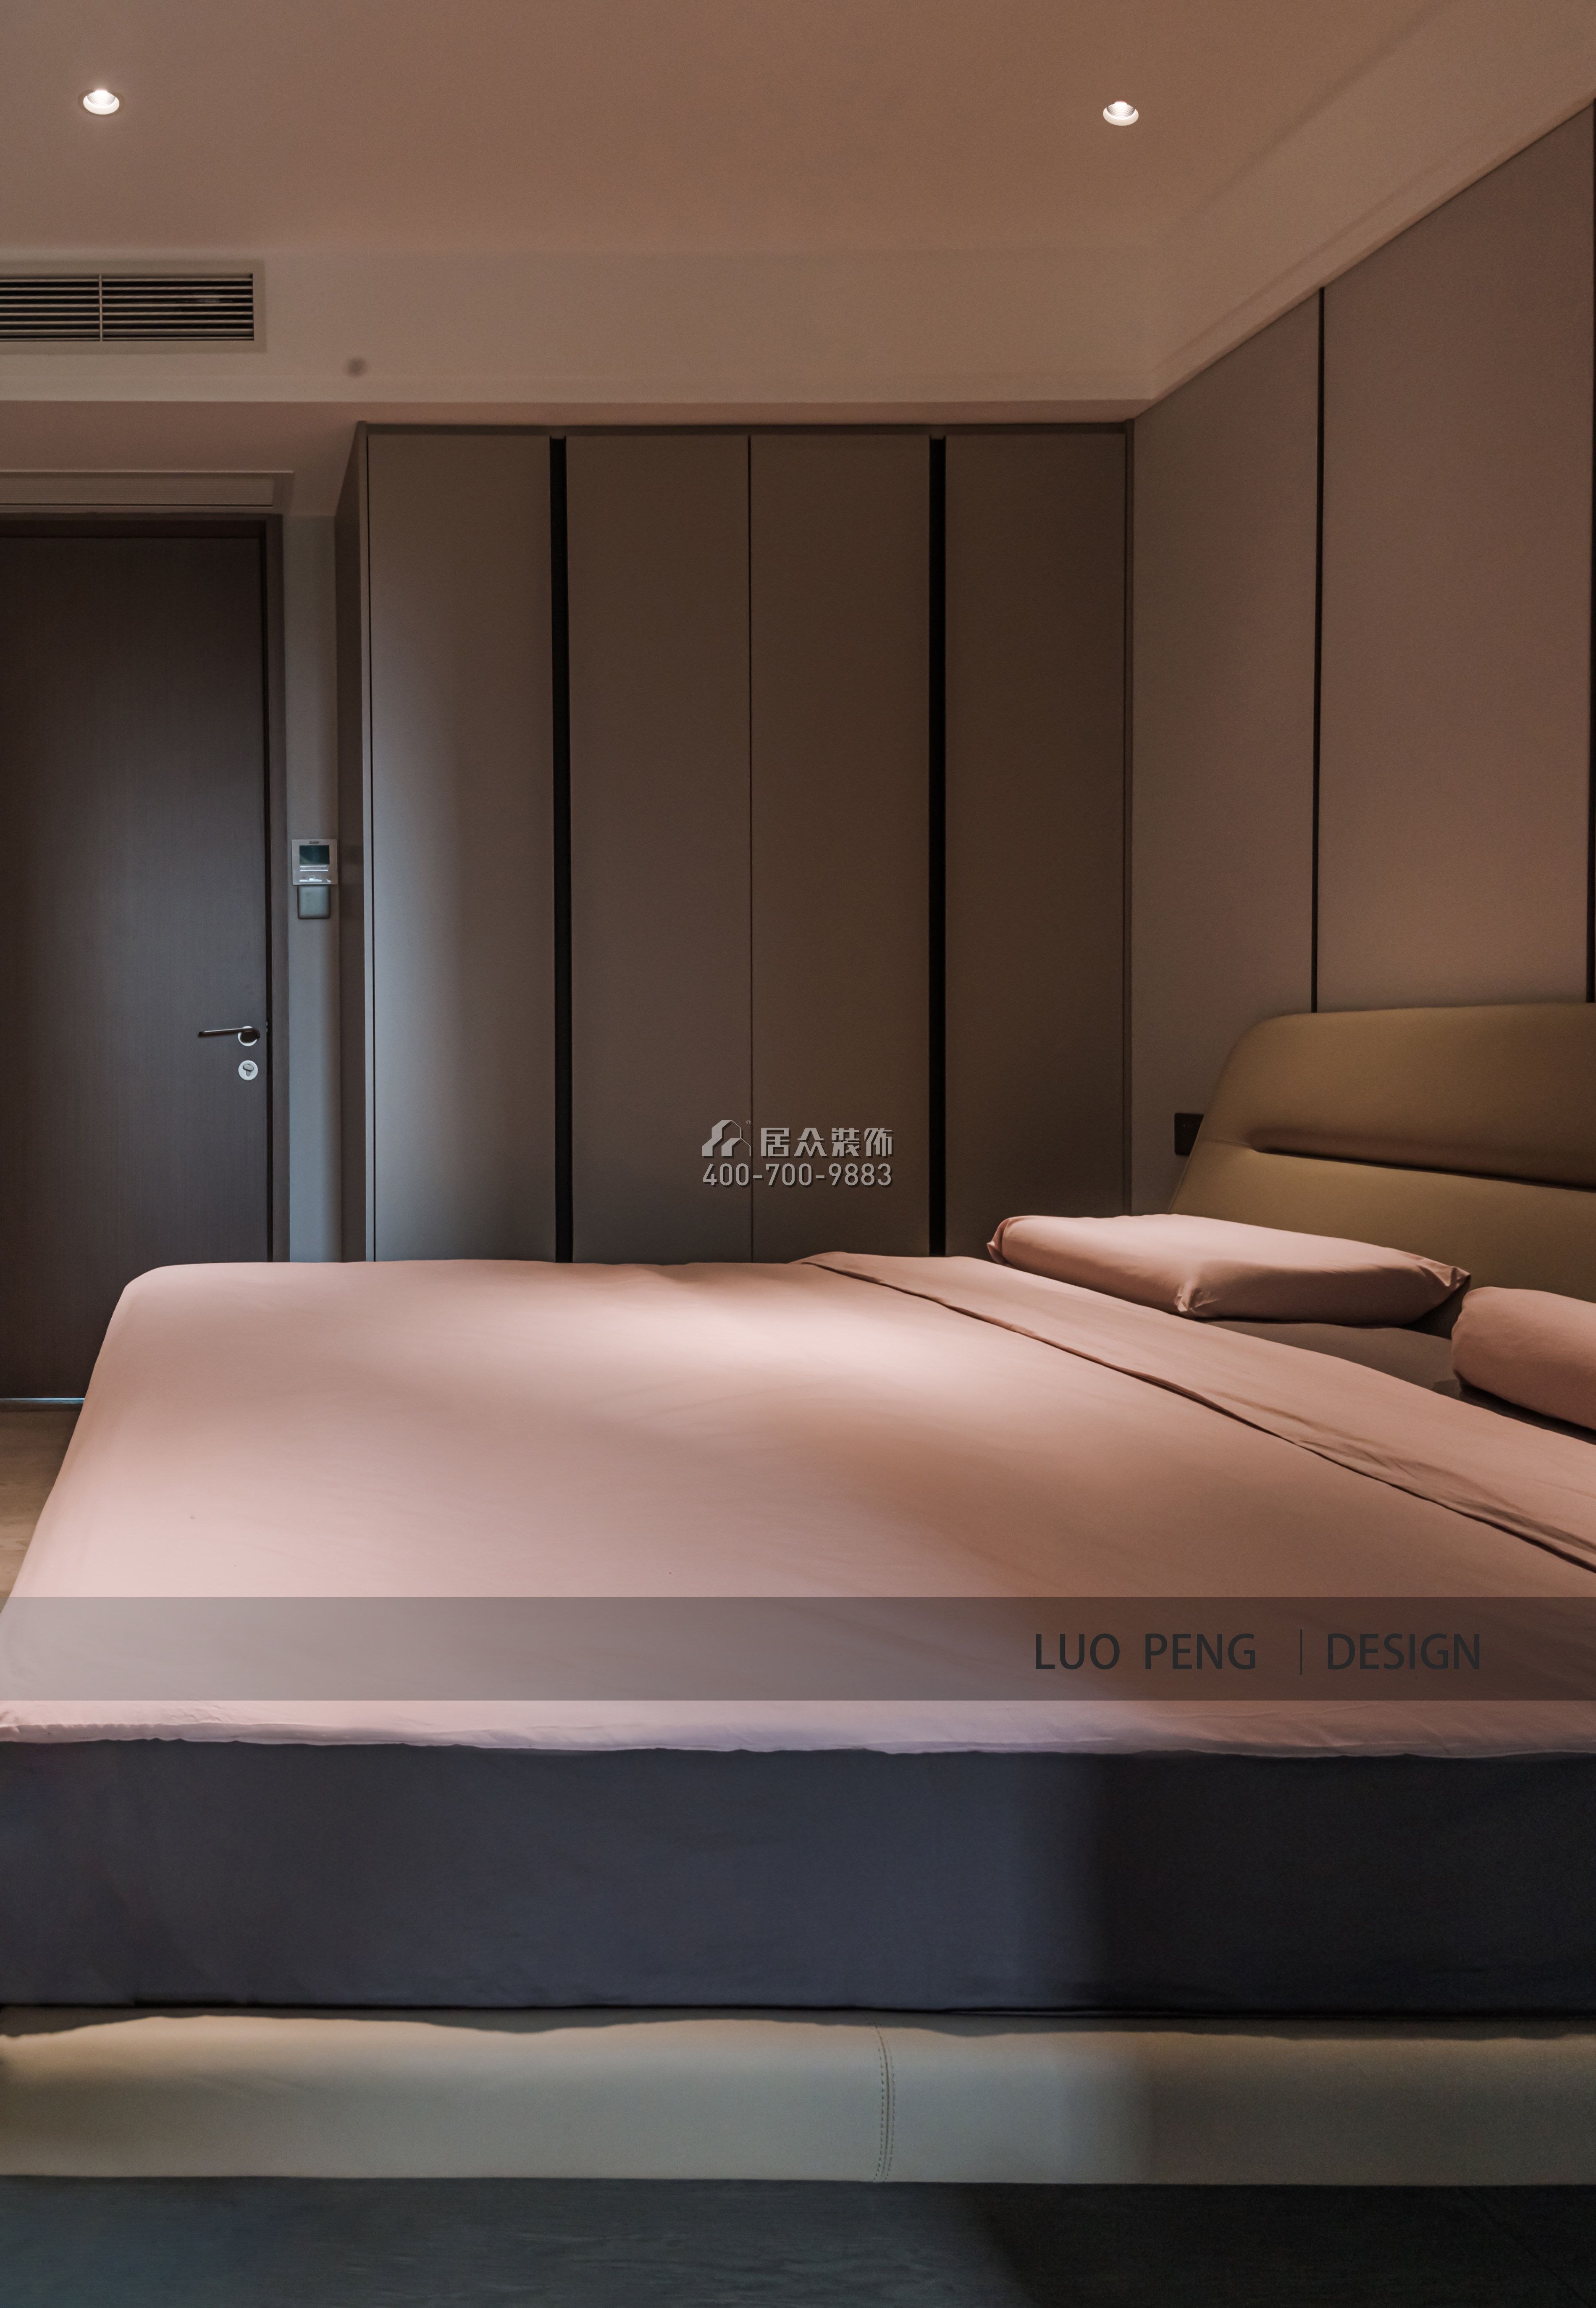 曦湾天馥220平方米现代简约风格平层户型卧室装修效果图